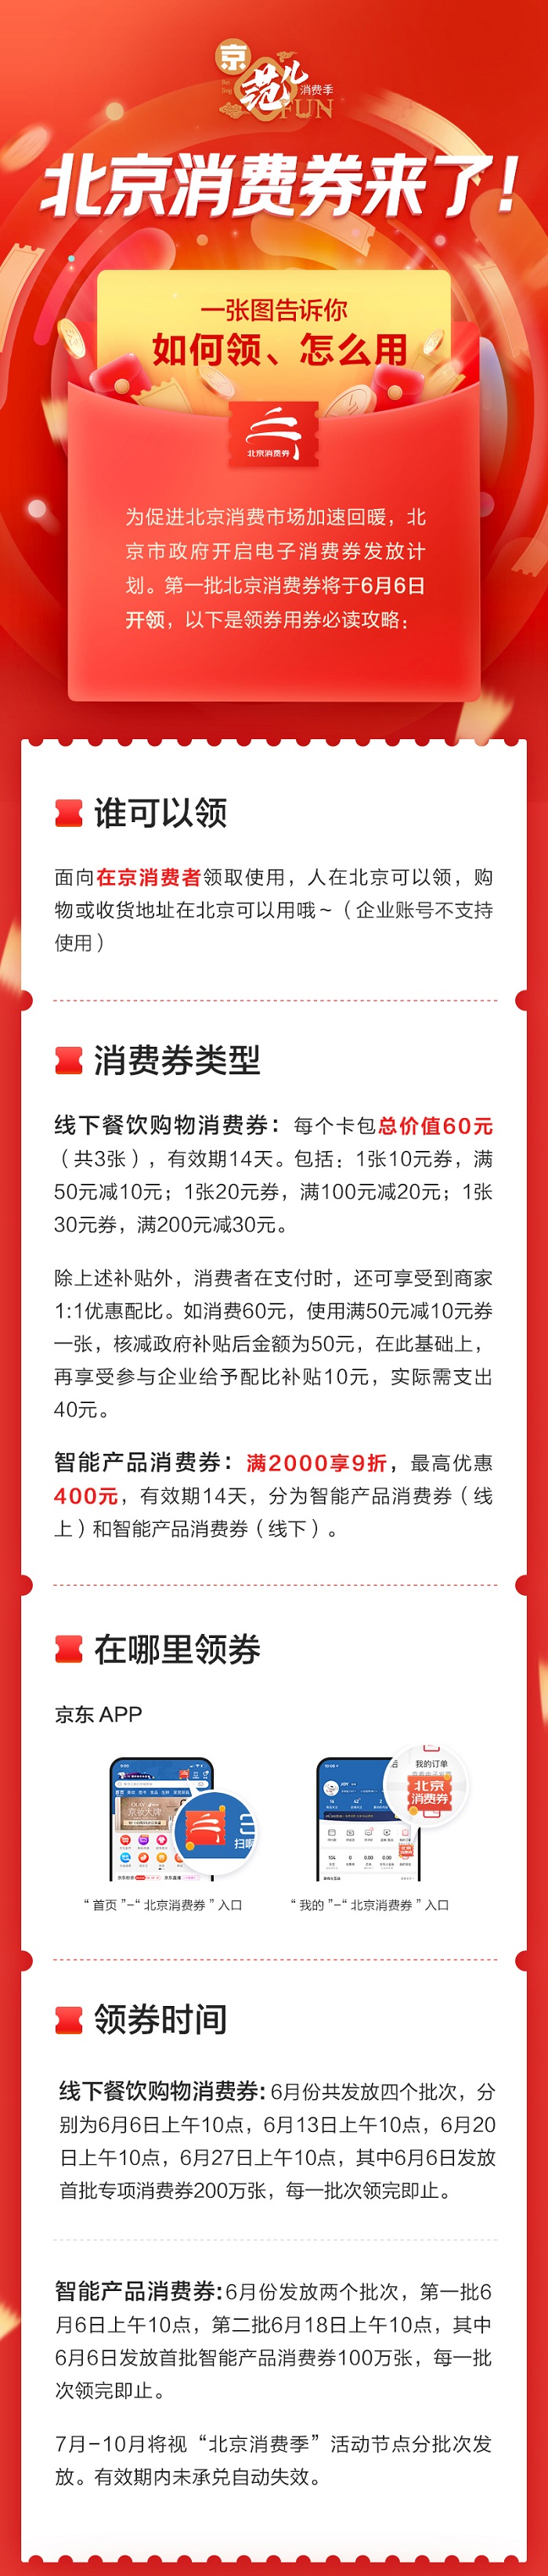 促消费助经济北京消费季6月6日启动122亿元消费券将发放